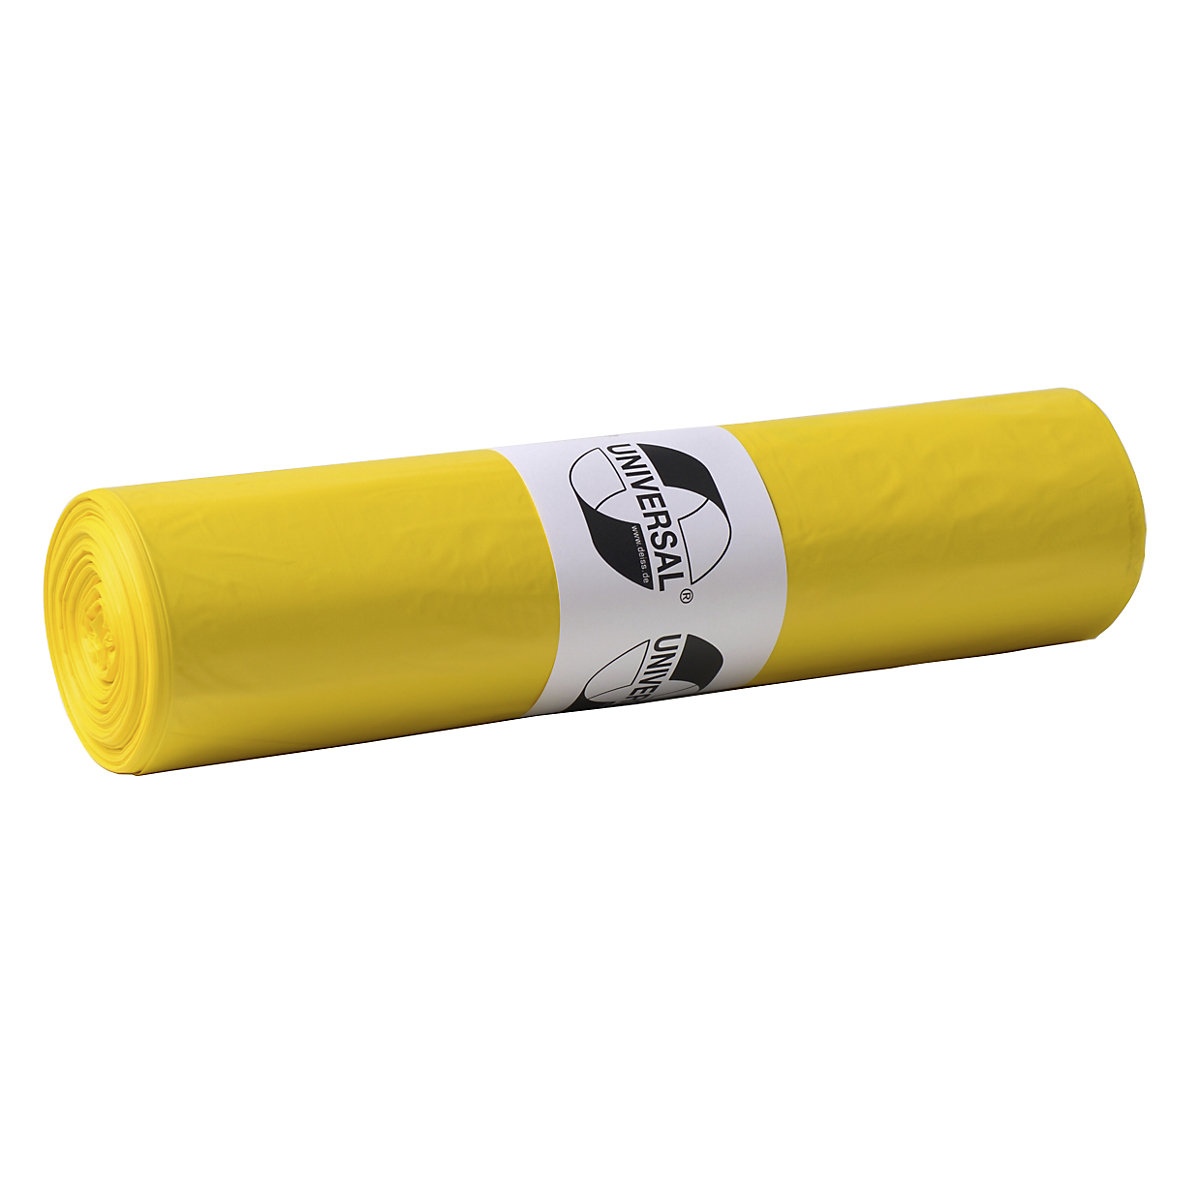 Sacs-poubelle standards en polyéthylène HD, 120 l, lot de 500, l x h 700 x 1100 mm, épaisseur 23 µm, jaune